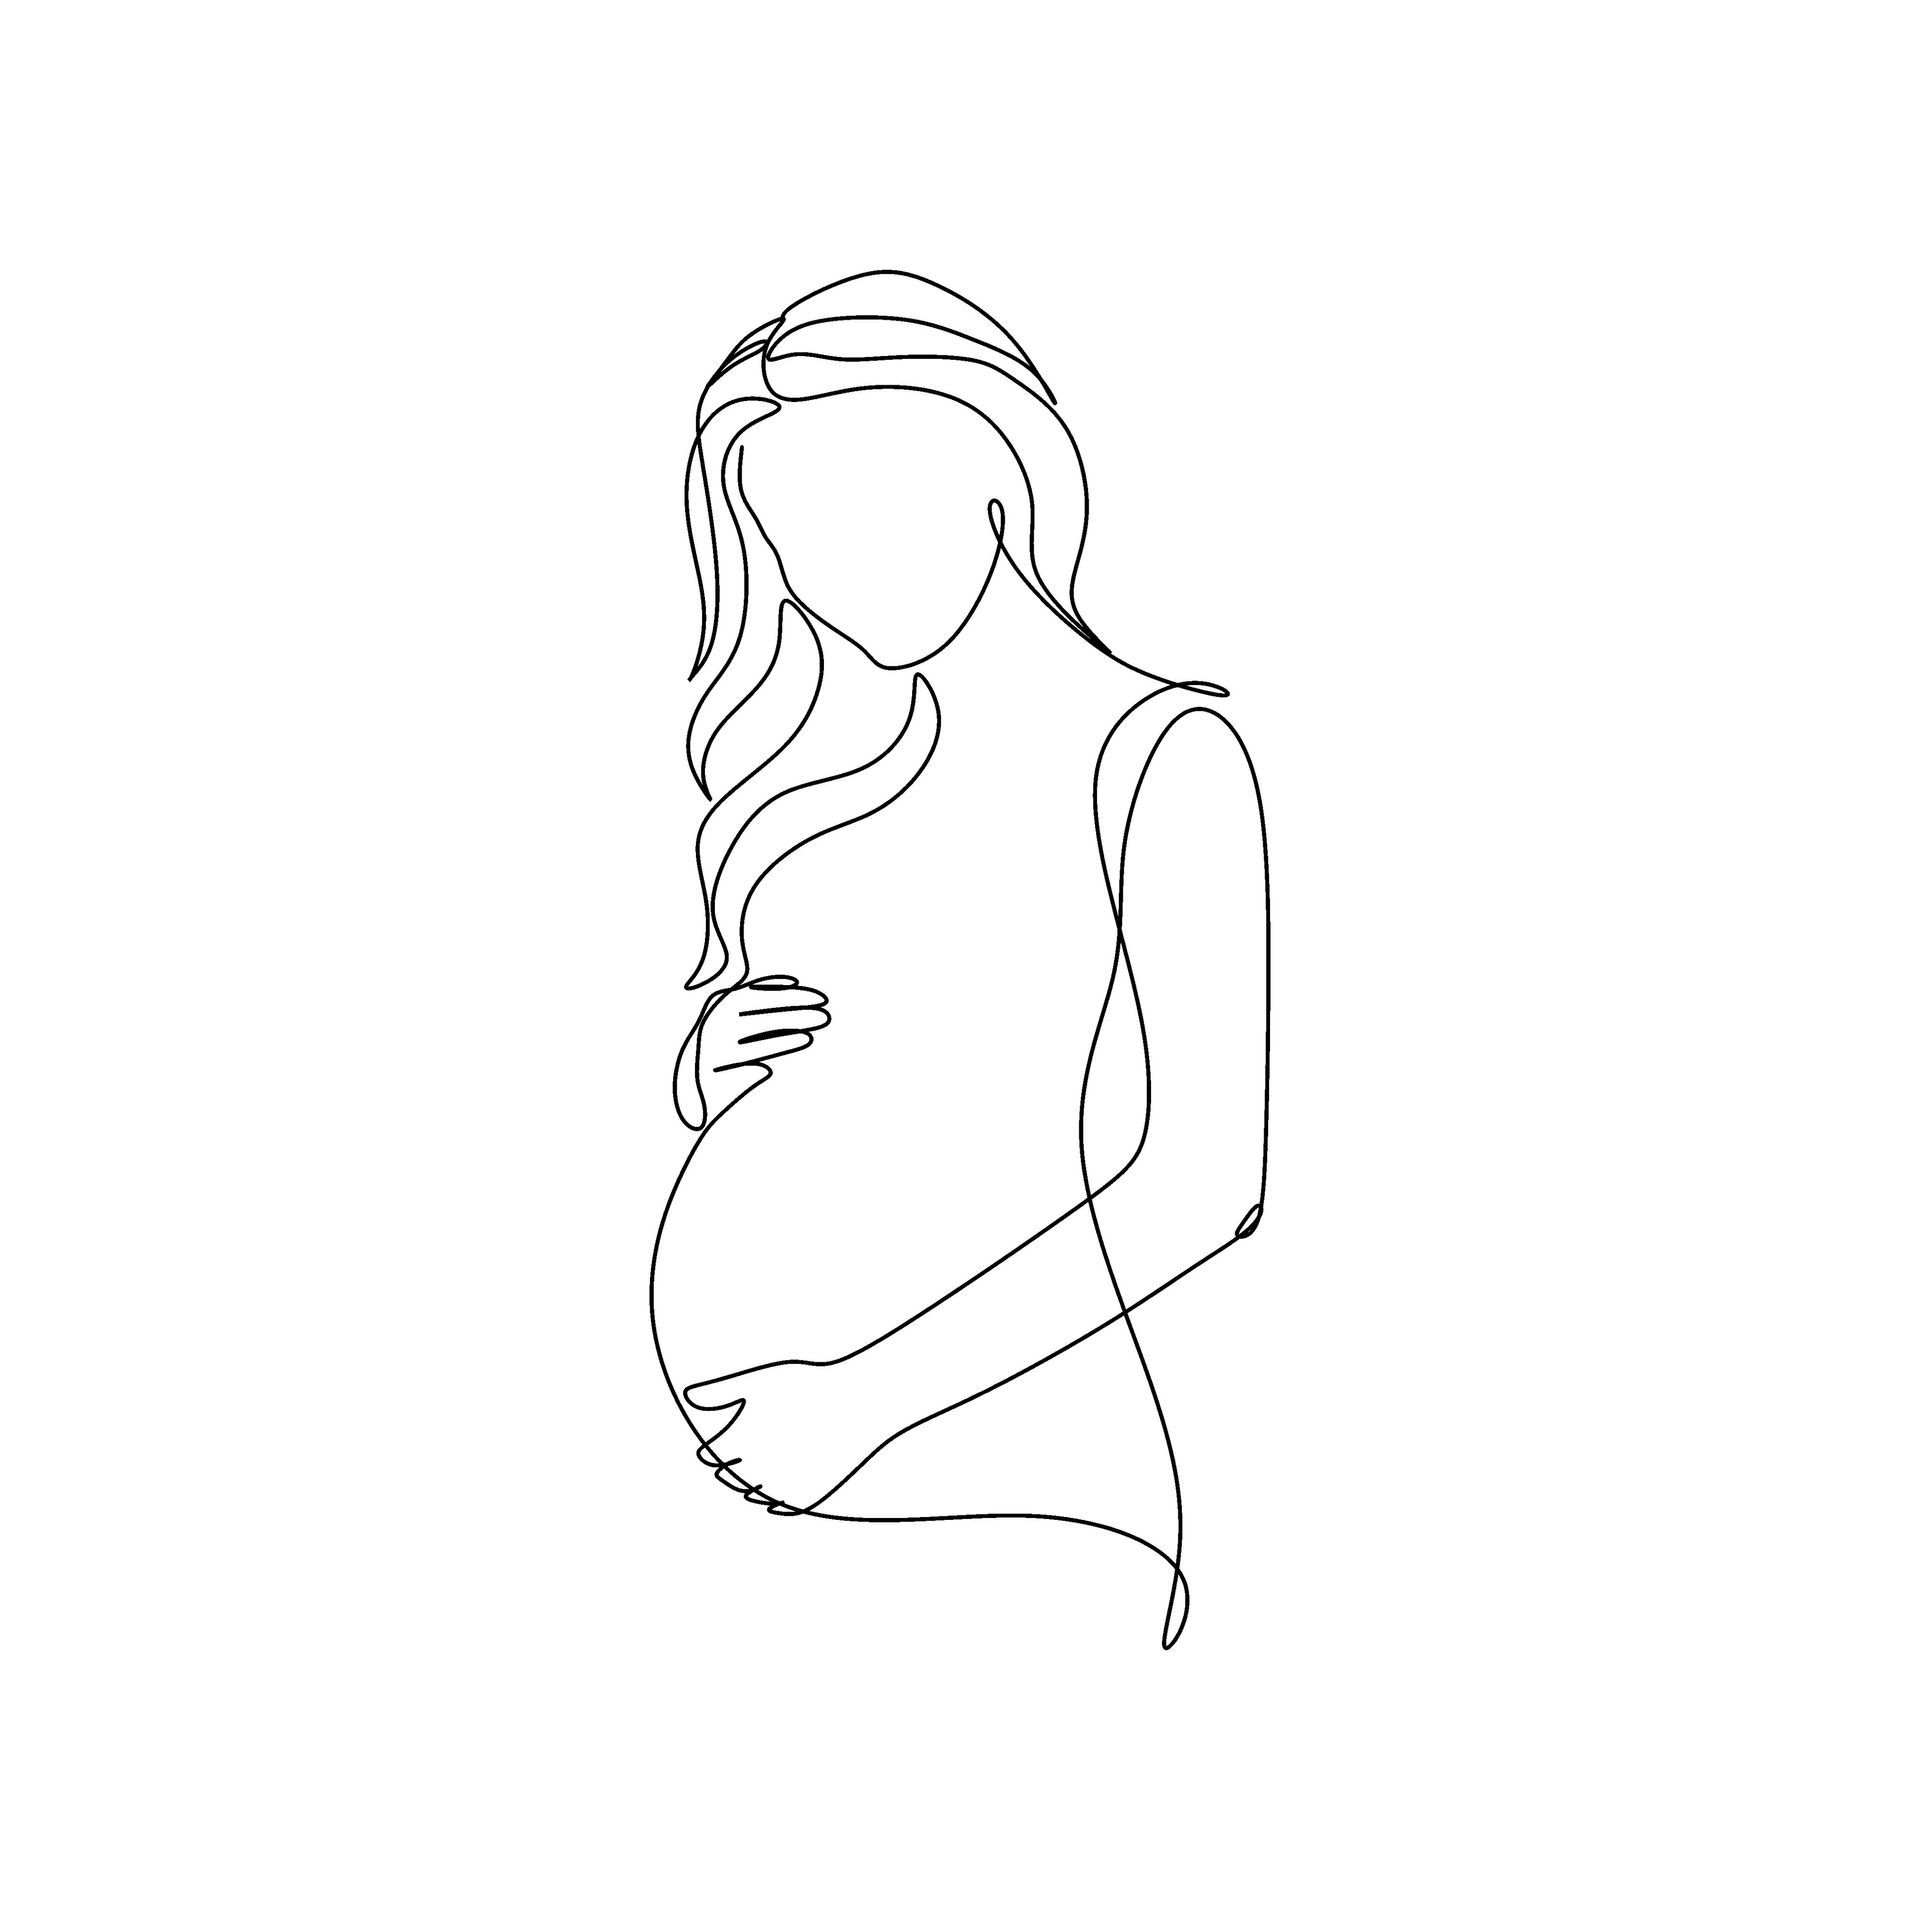 Un dessin de femme enceinte avec des longs cheveux
